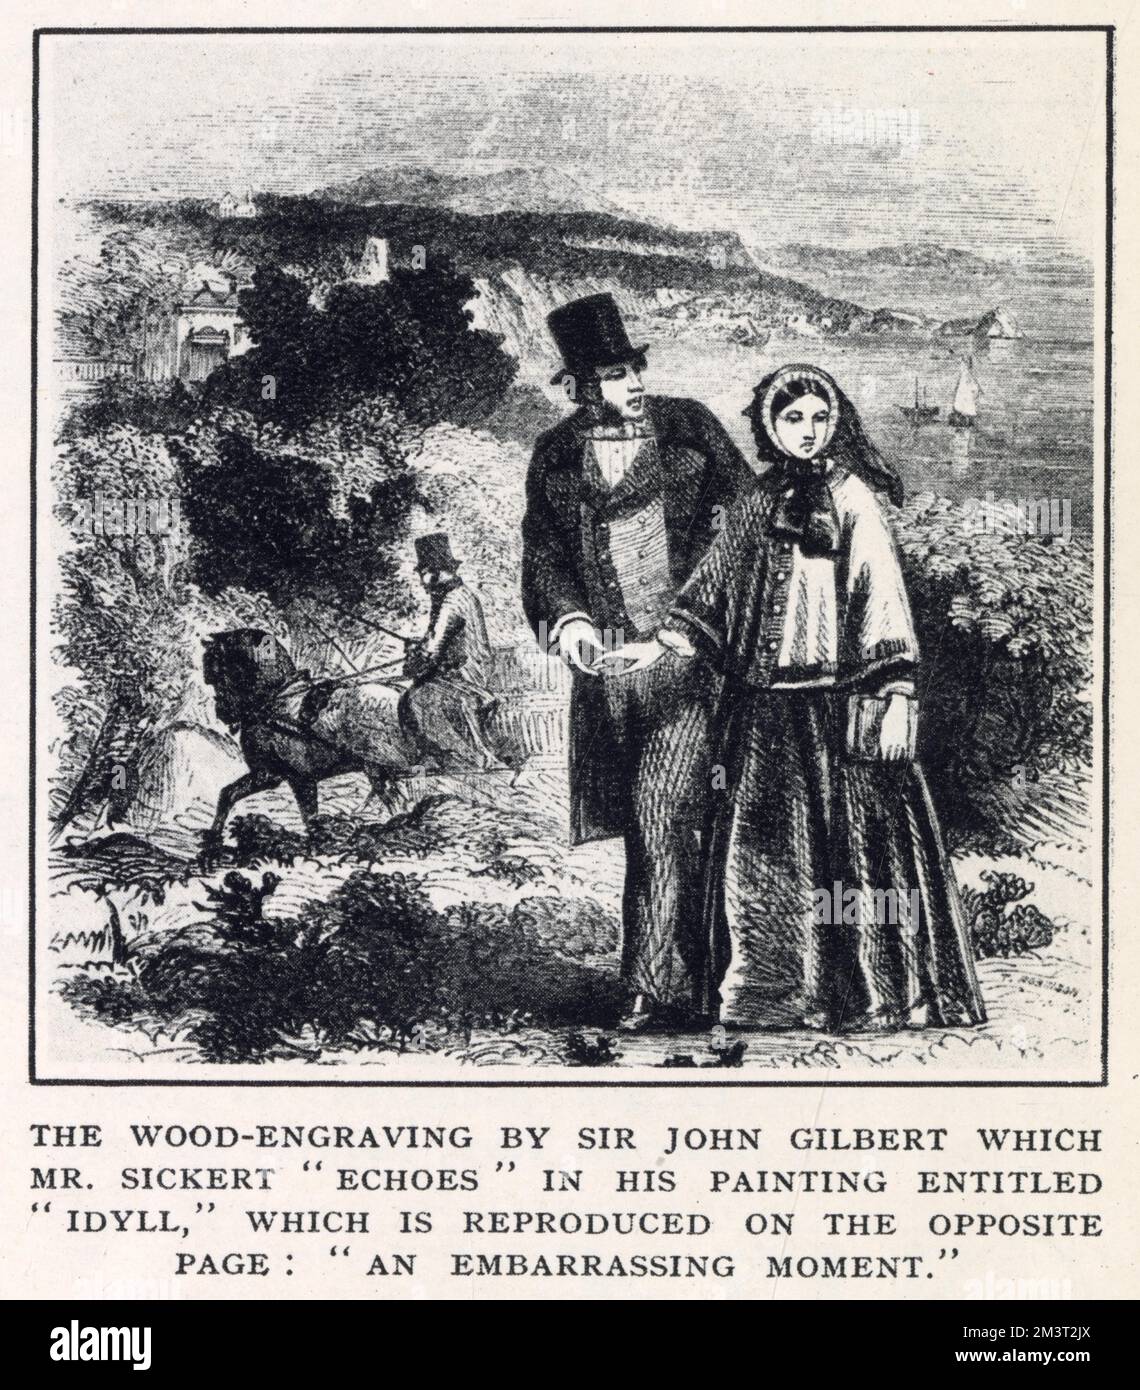 Incisione di Sir John Gilbert, apparsa nel 1932 nell'Illustrated London News per mostrare come il pittore Richard Sickert usò le incisioni di Gilbert come base per una serie di dipinti che chiamò "echi inglesi". Gilbert fu uno dei primi collaboratori dell'ILN e fu un punto di forza della pubblicazione durante i suoi primi decenni. Foto Stock